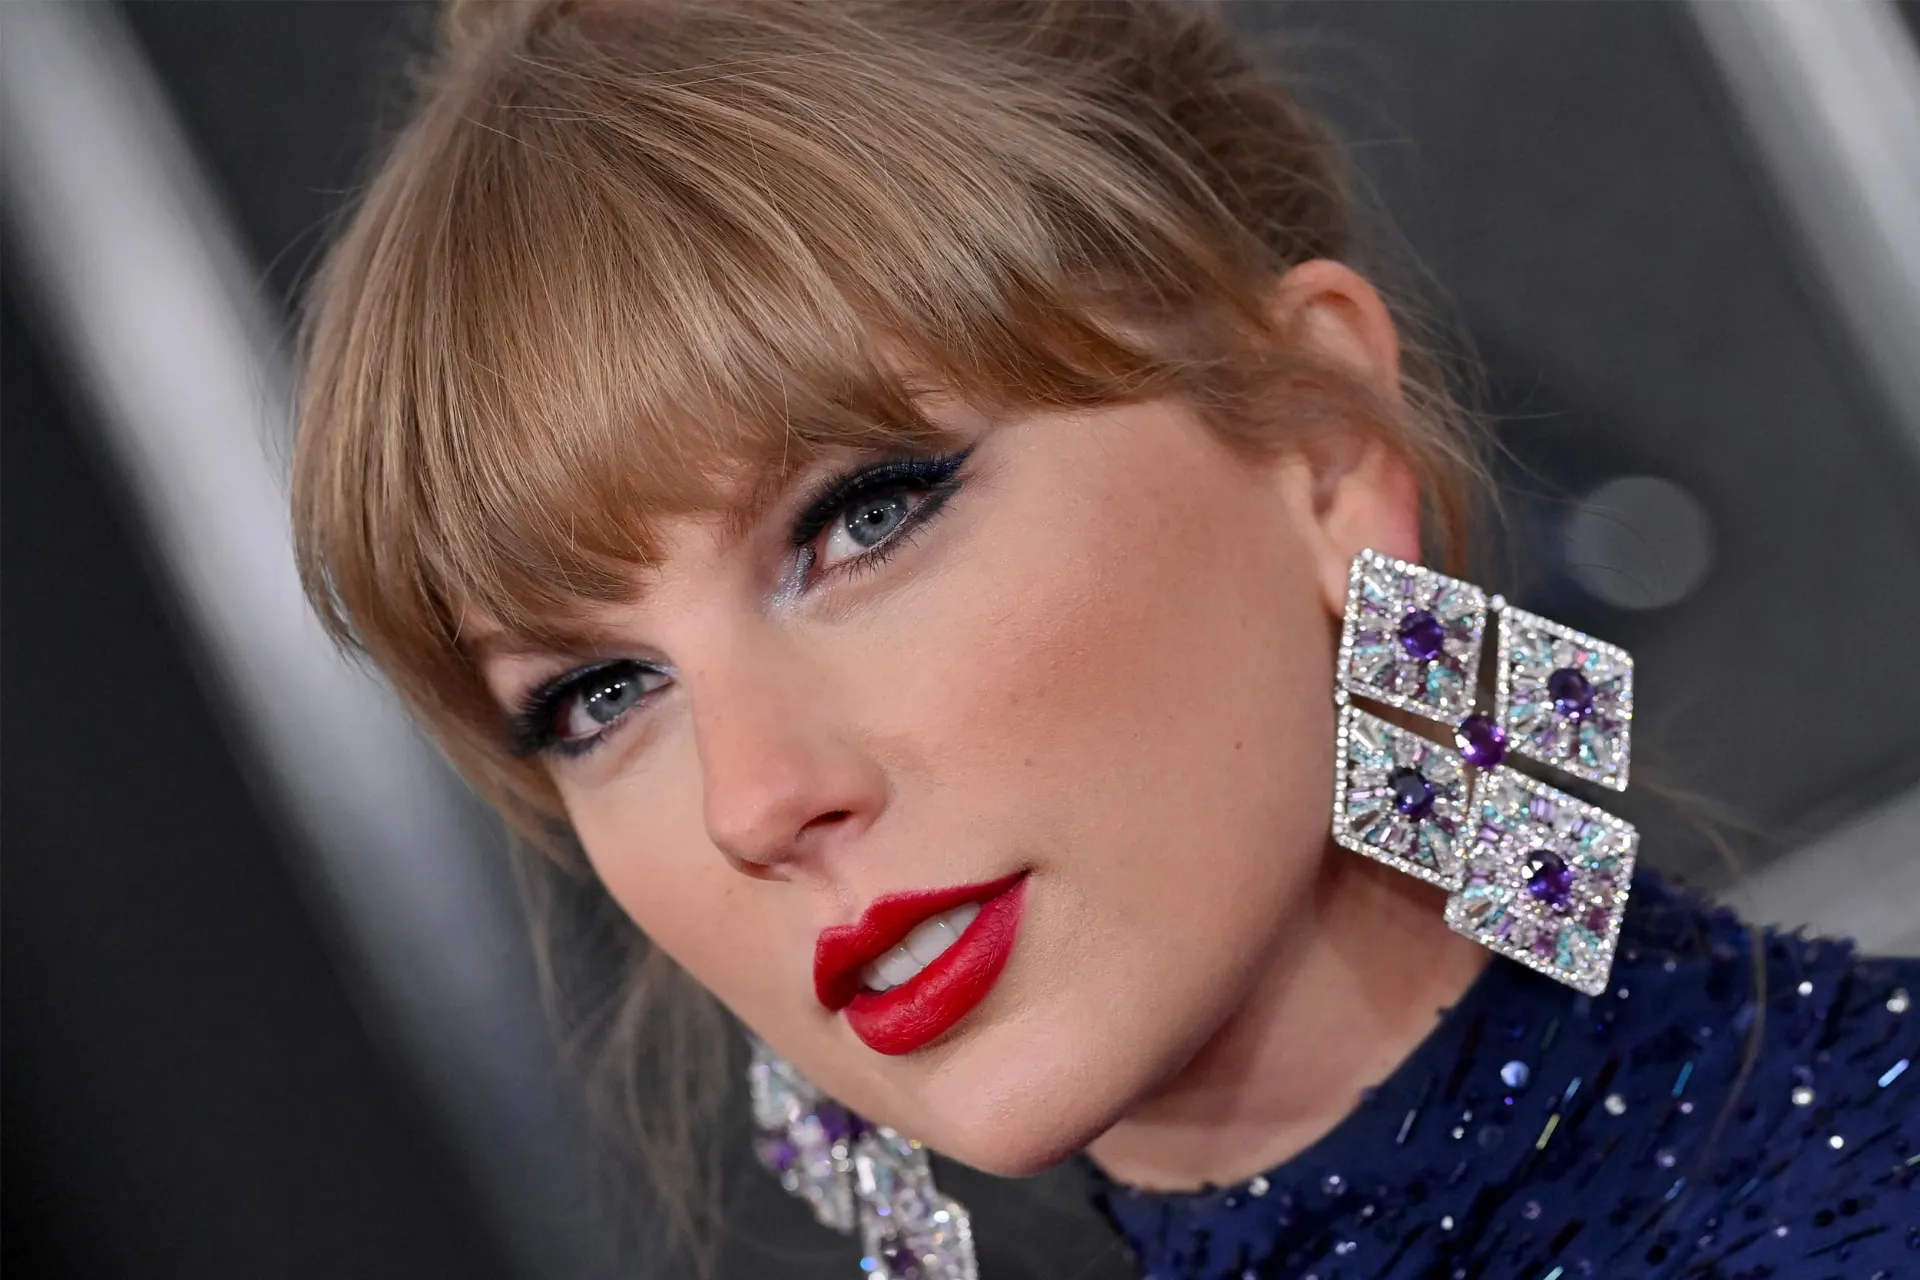 چهره تیلور سوییفت / Taylor Swift از نمای نزدیک با آرایش و موی چتری